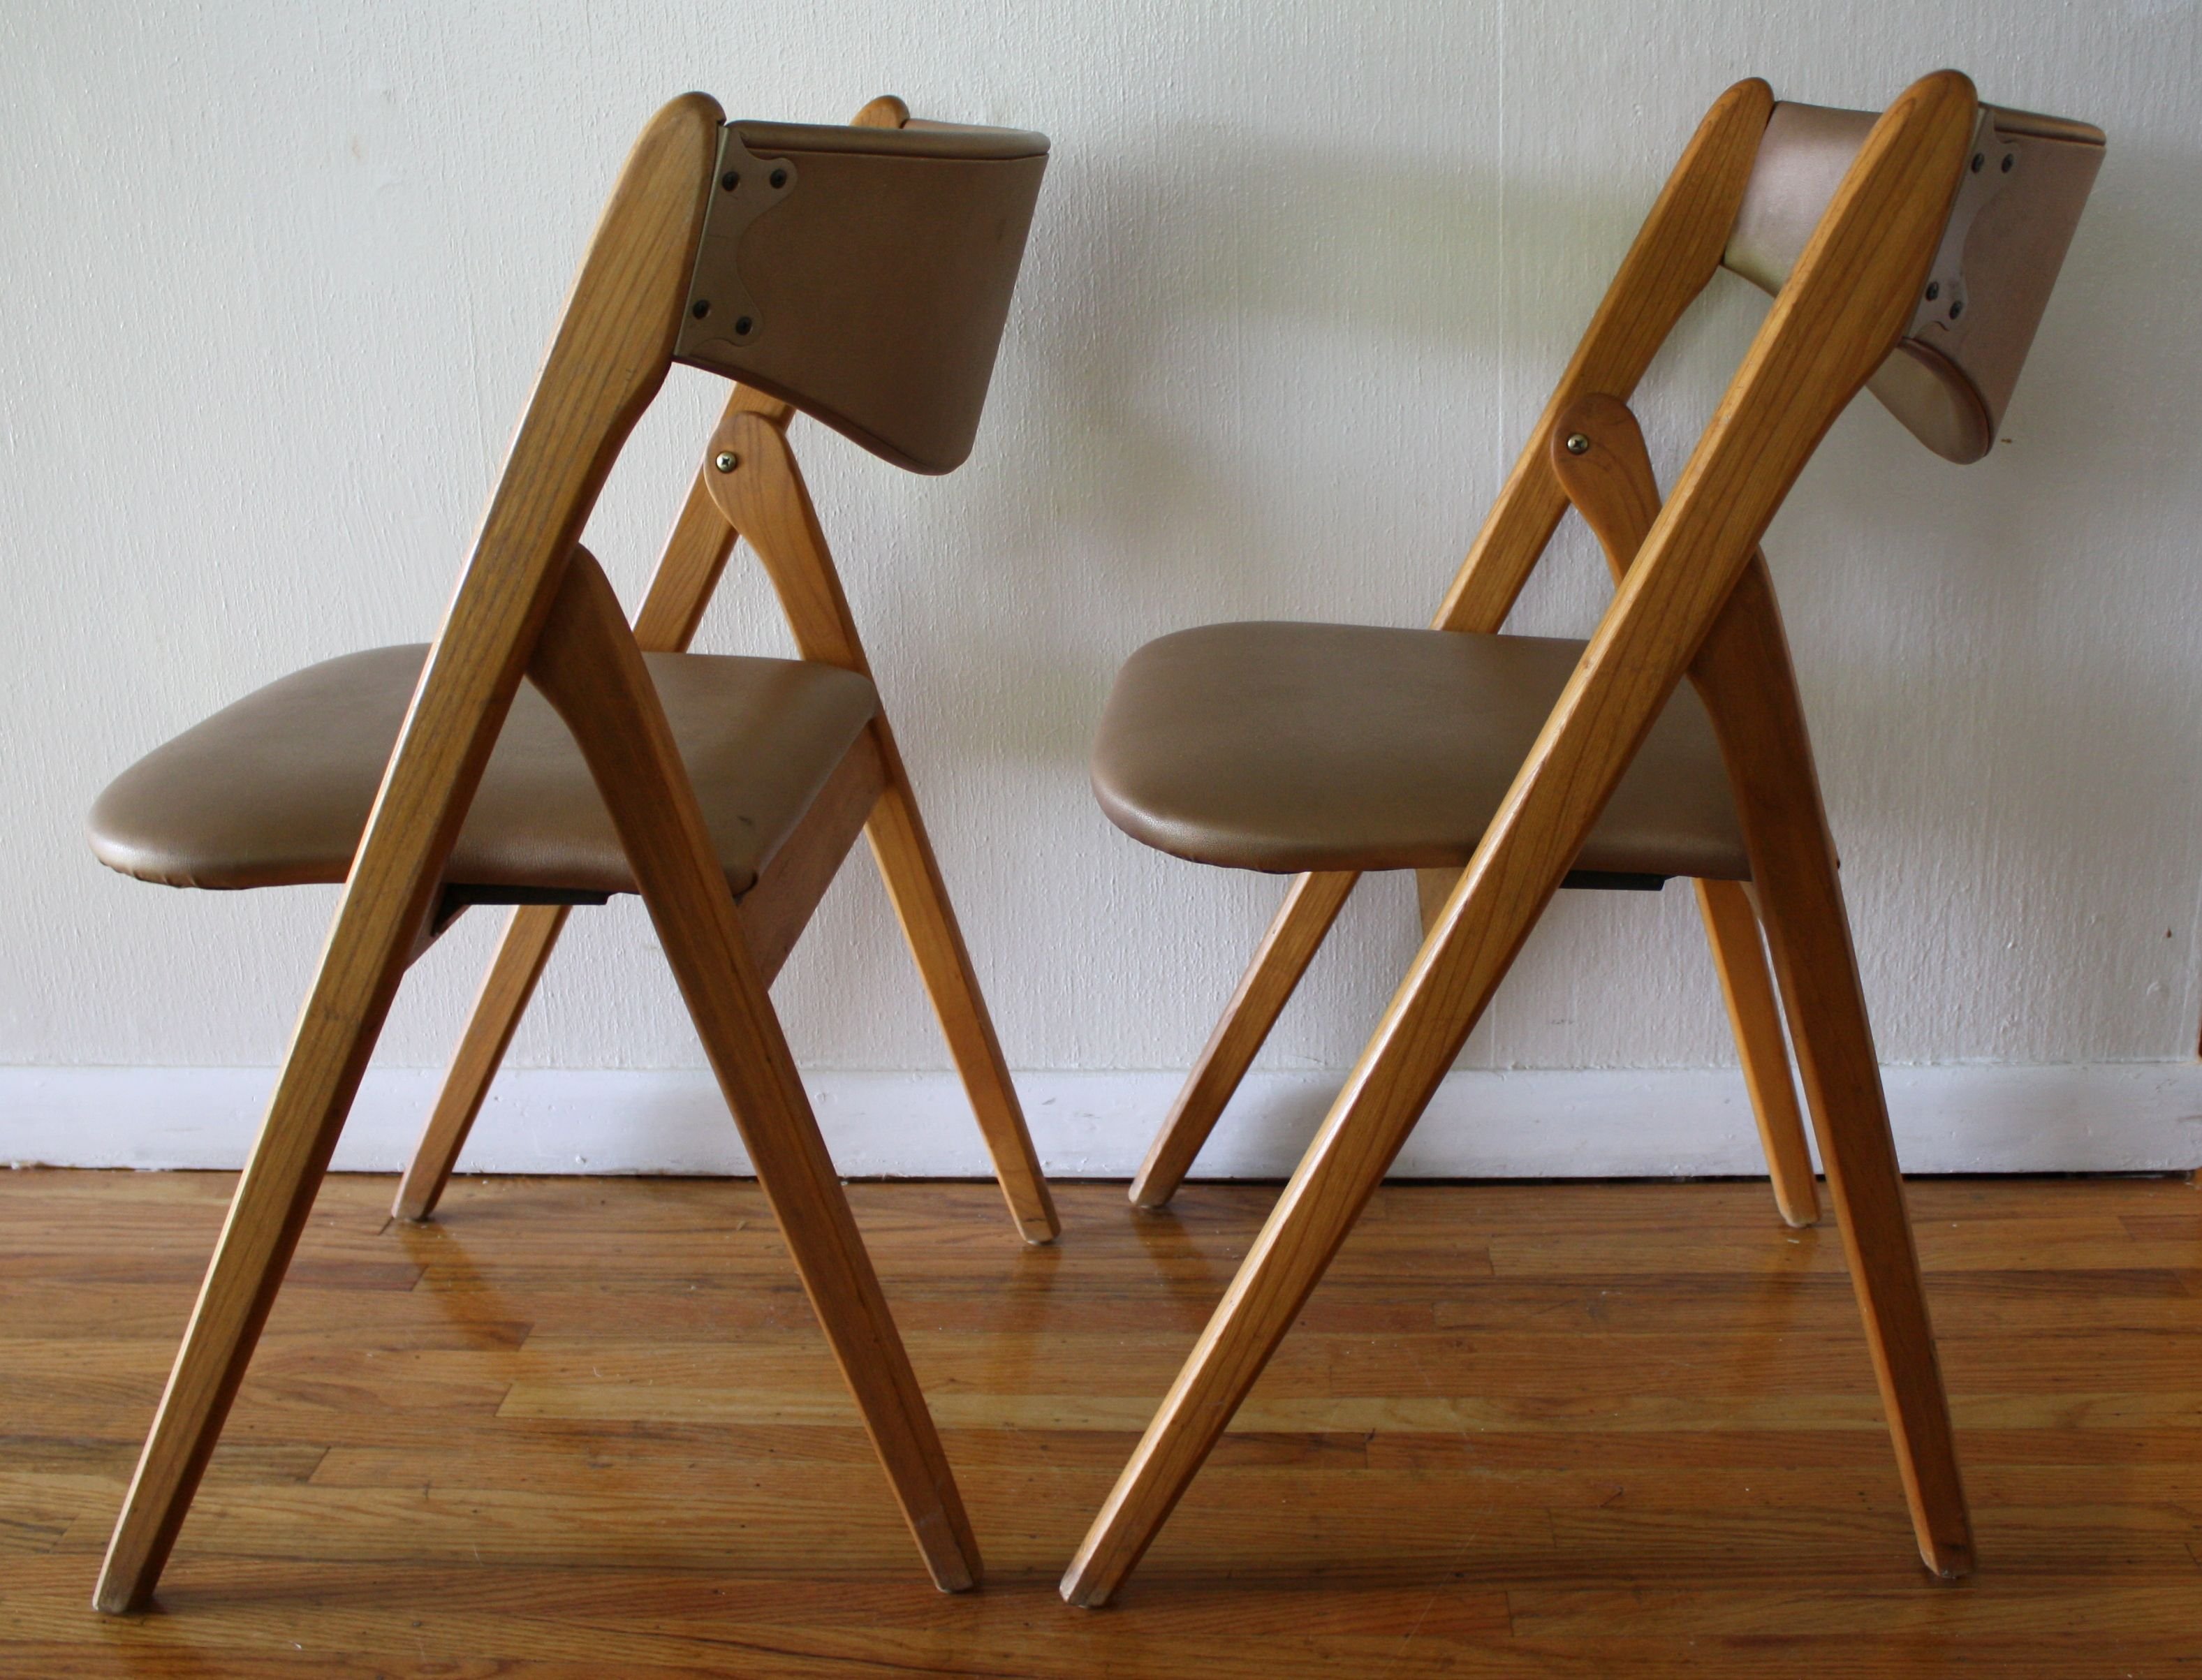 Складной стул для дома. Стул МИД сенчури. Стул Chair (Чаир) раскладной. Стул складной деревянный икеа. Складные стулья Mid Century Modern.